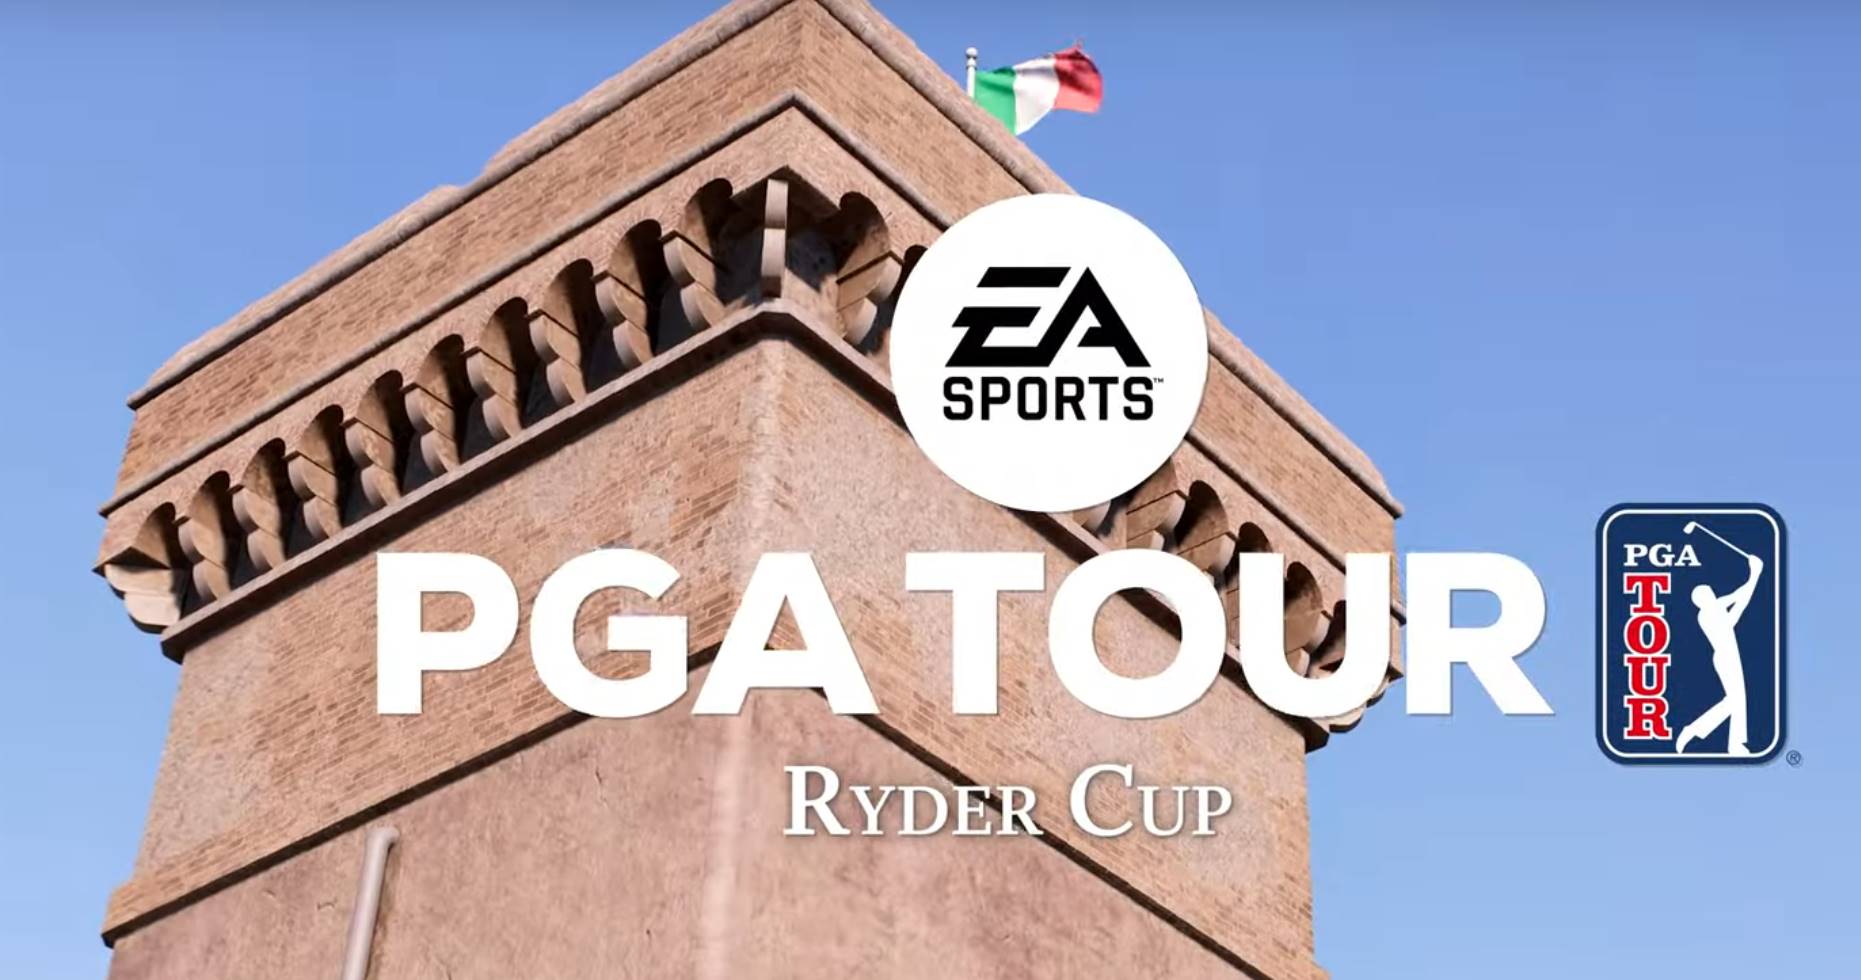 EA SPORTS PGA TOUR: ora disponibile la Stagione 6